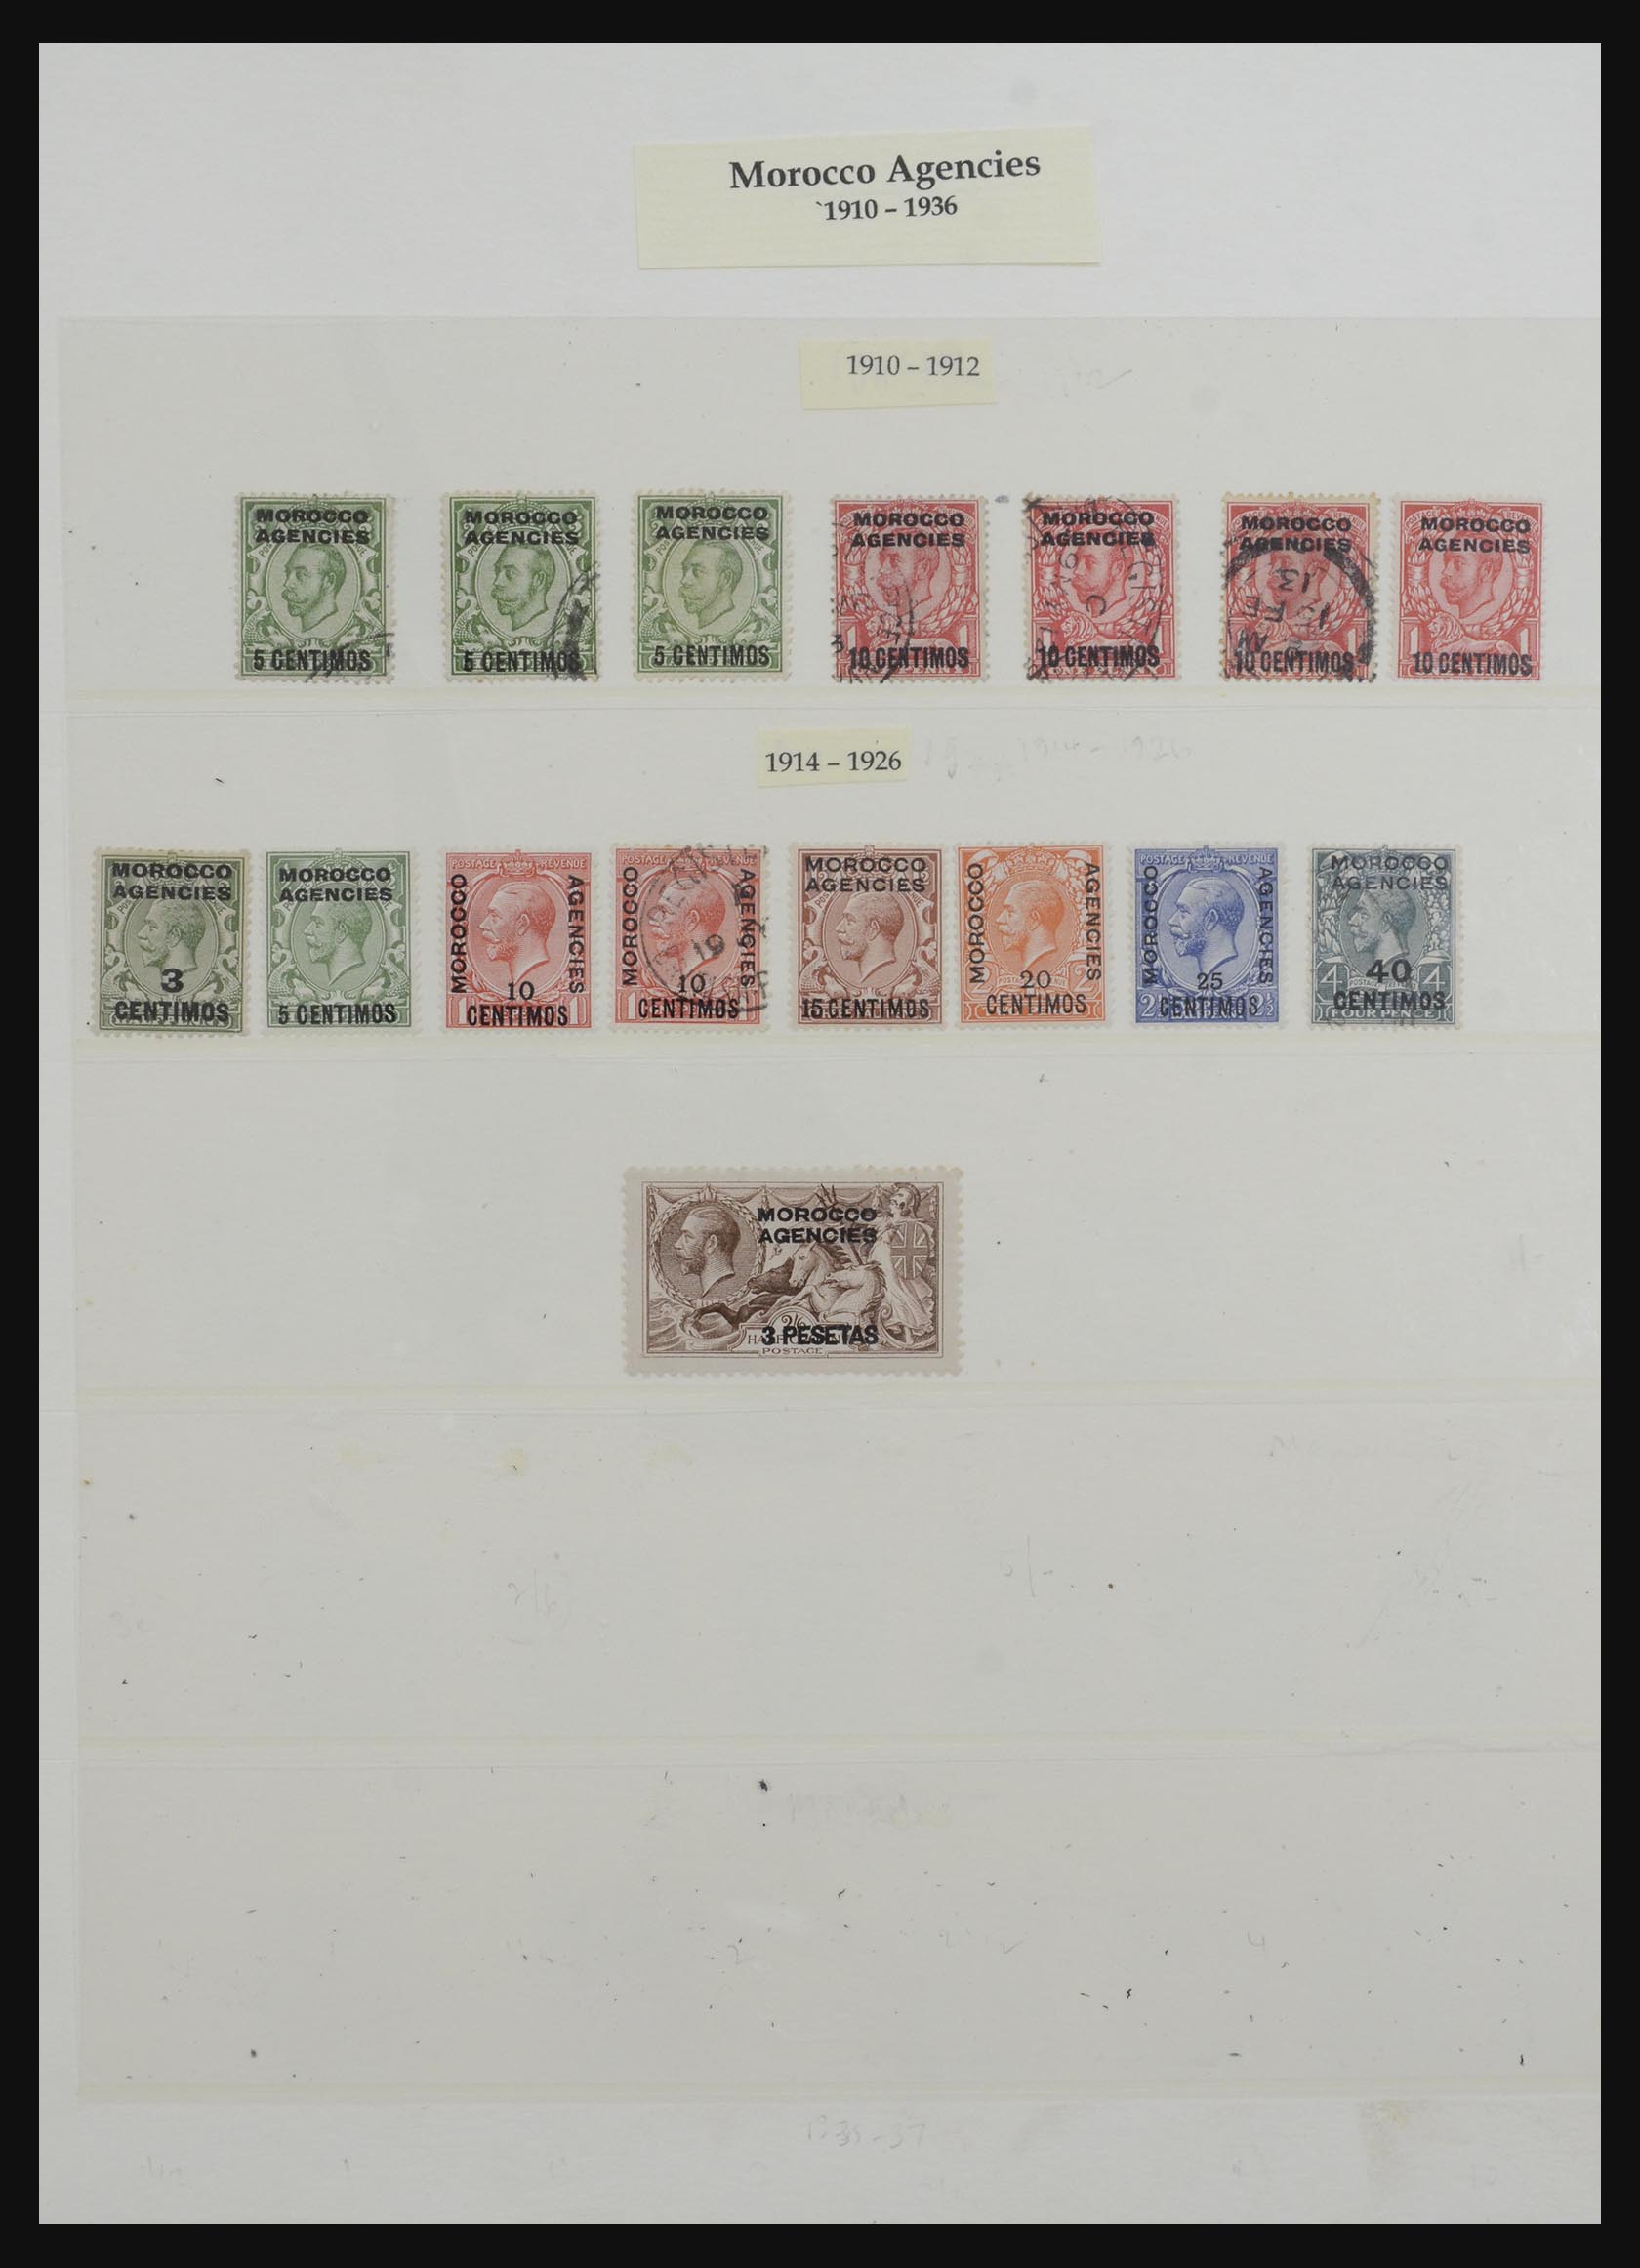 32228 025 - 32228 Brits Levant en Marokko Agencies 1857-1952.